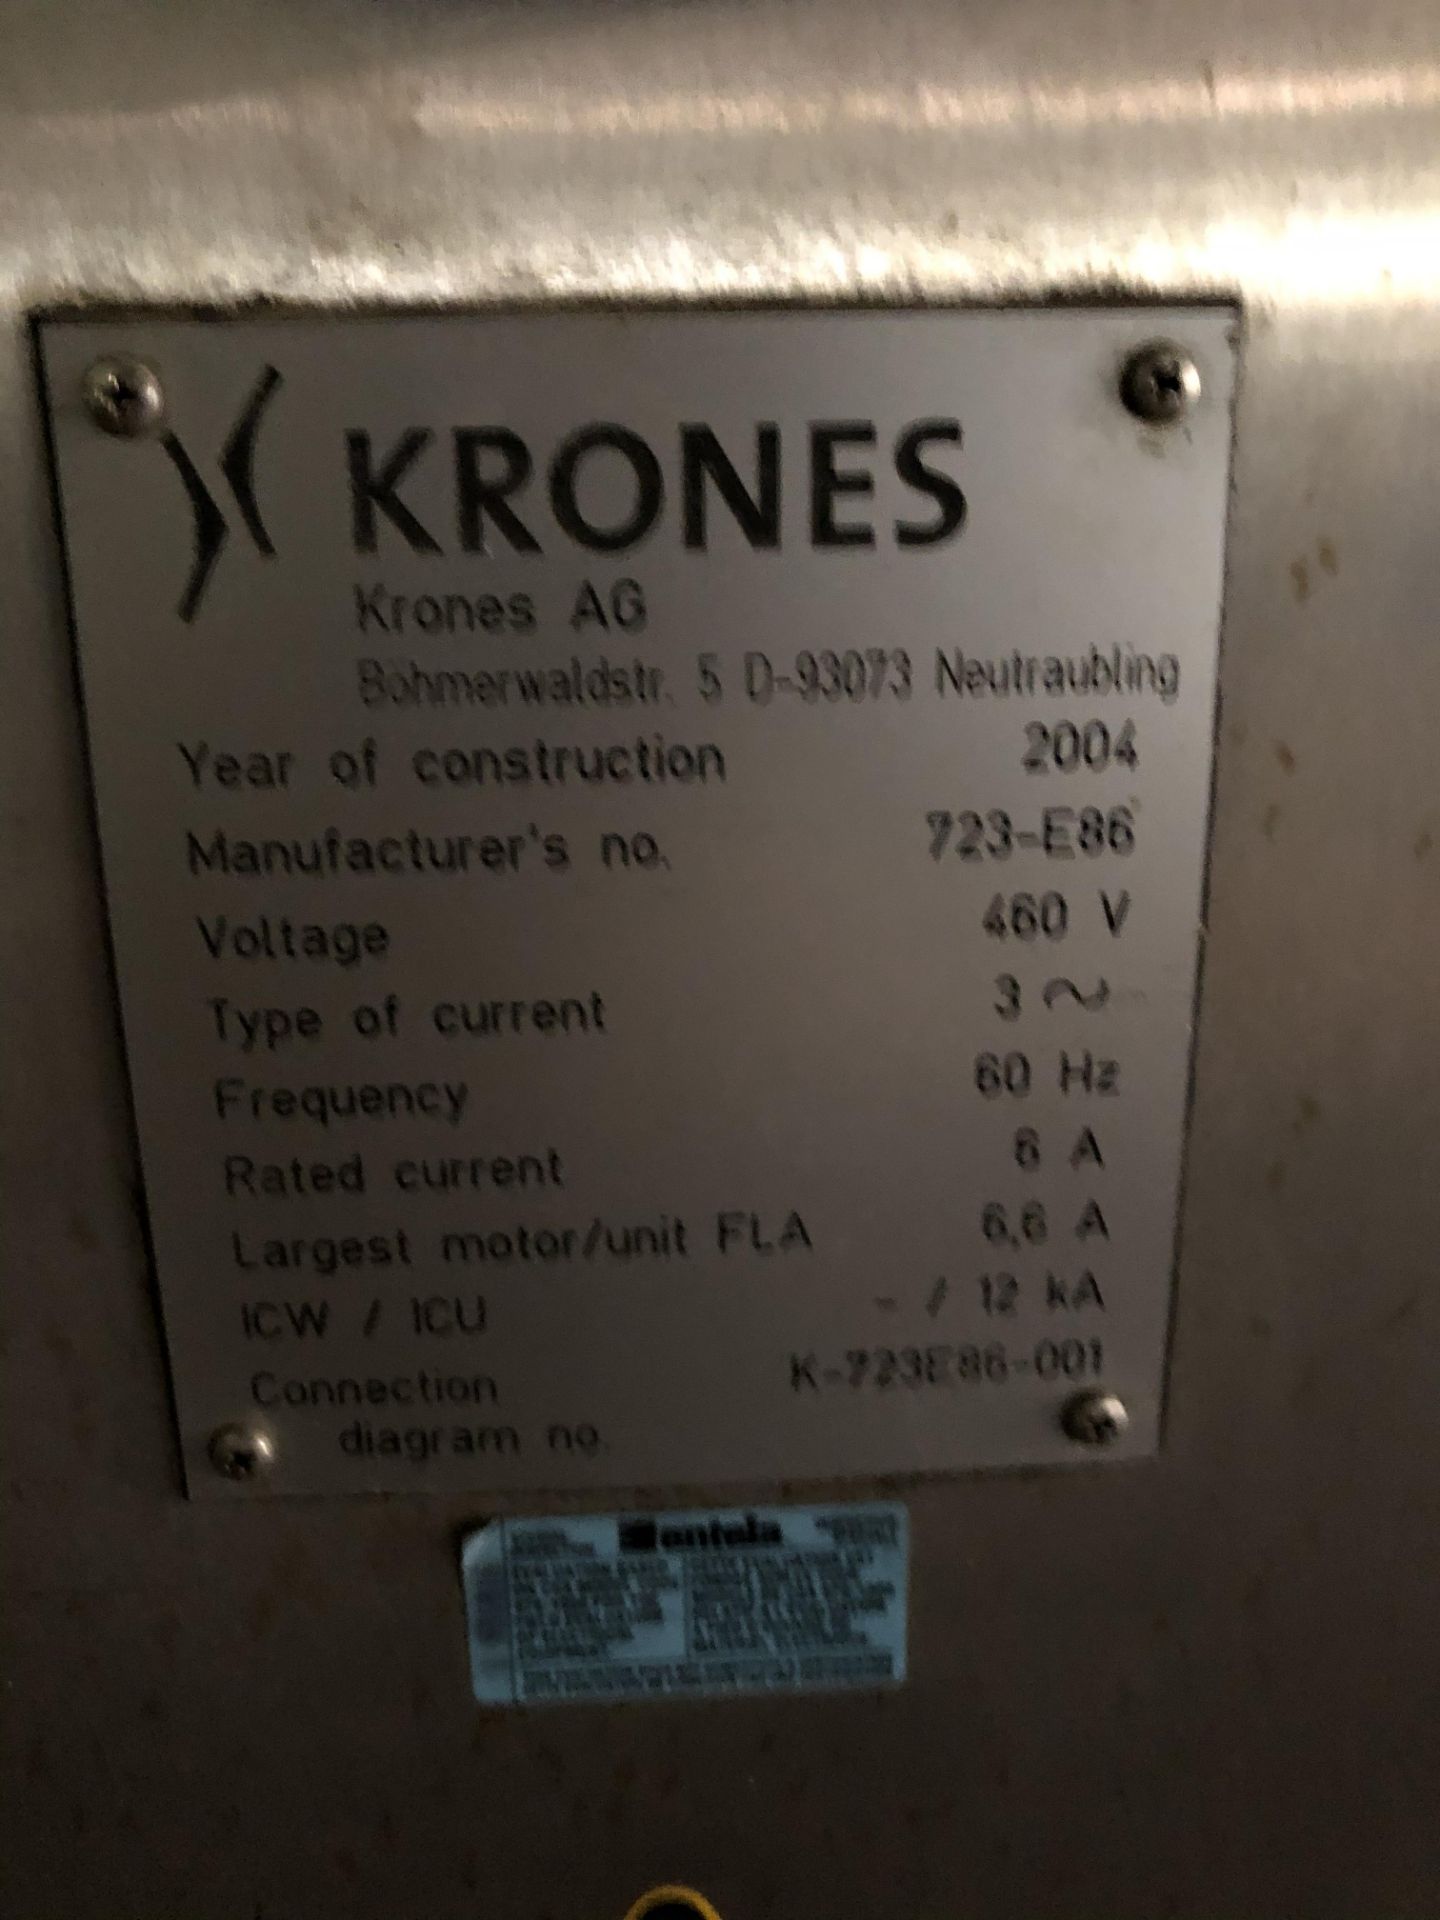 Krones Universella Labeler, Machine #723-E86, RIGGING FEE - $1750 - Image 2 of 6